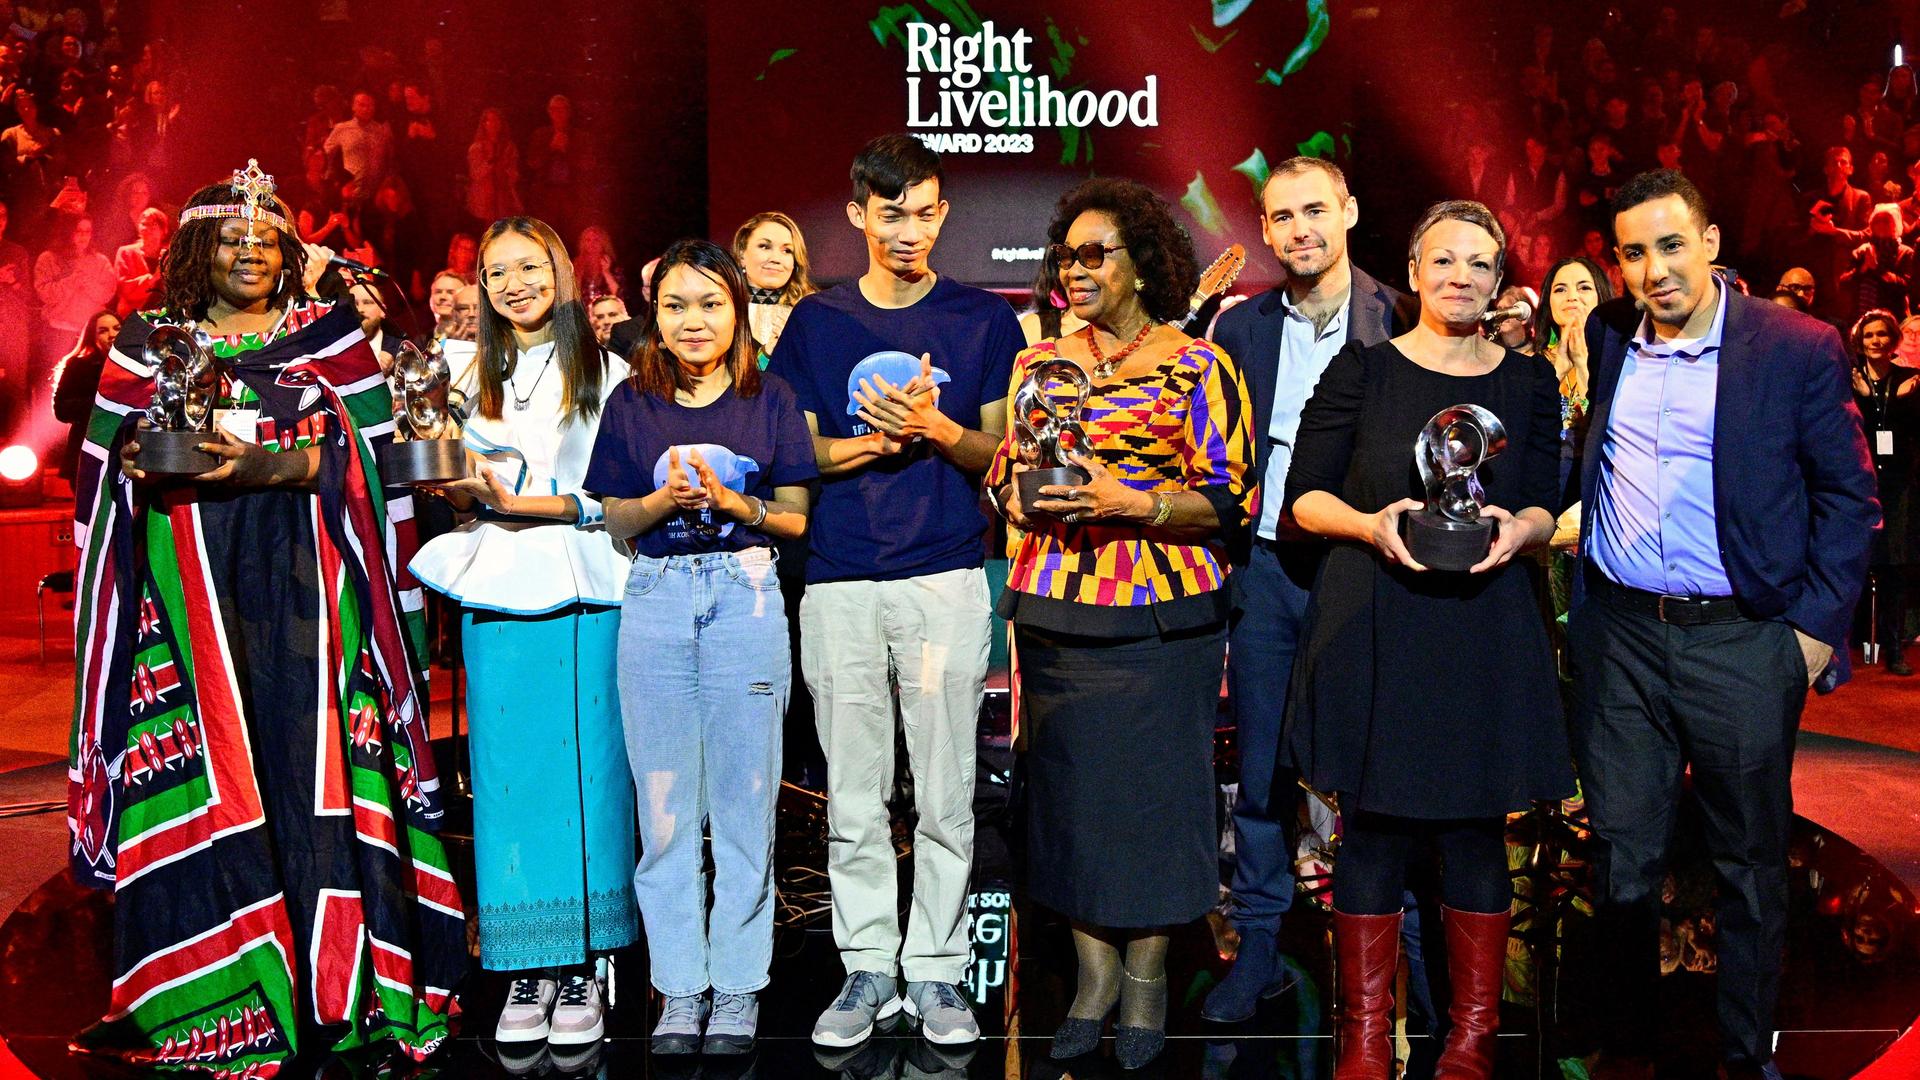 Eine Gruppe von Männern und Frauen, eine davon in afrikanischem Gewand, steht auf einer Bühne mit der Aufschrift "Right Livelihood Award 2023". Sie halten ihre Auszeichnungen in den Händen.